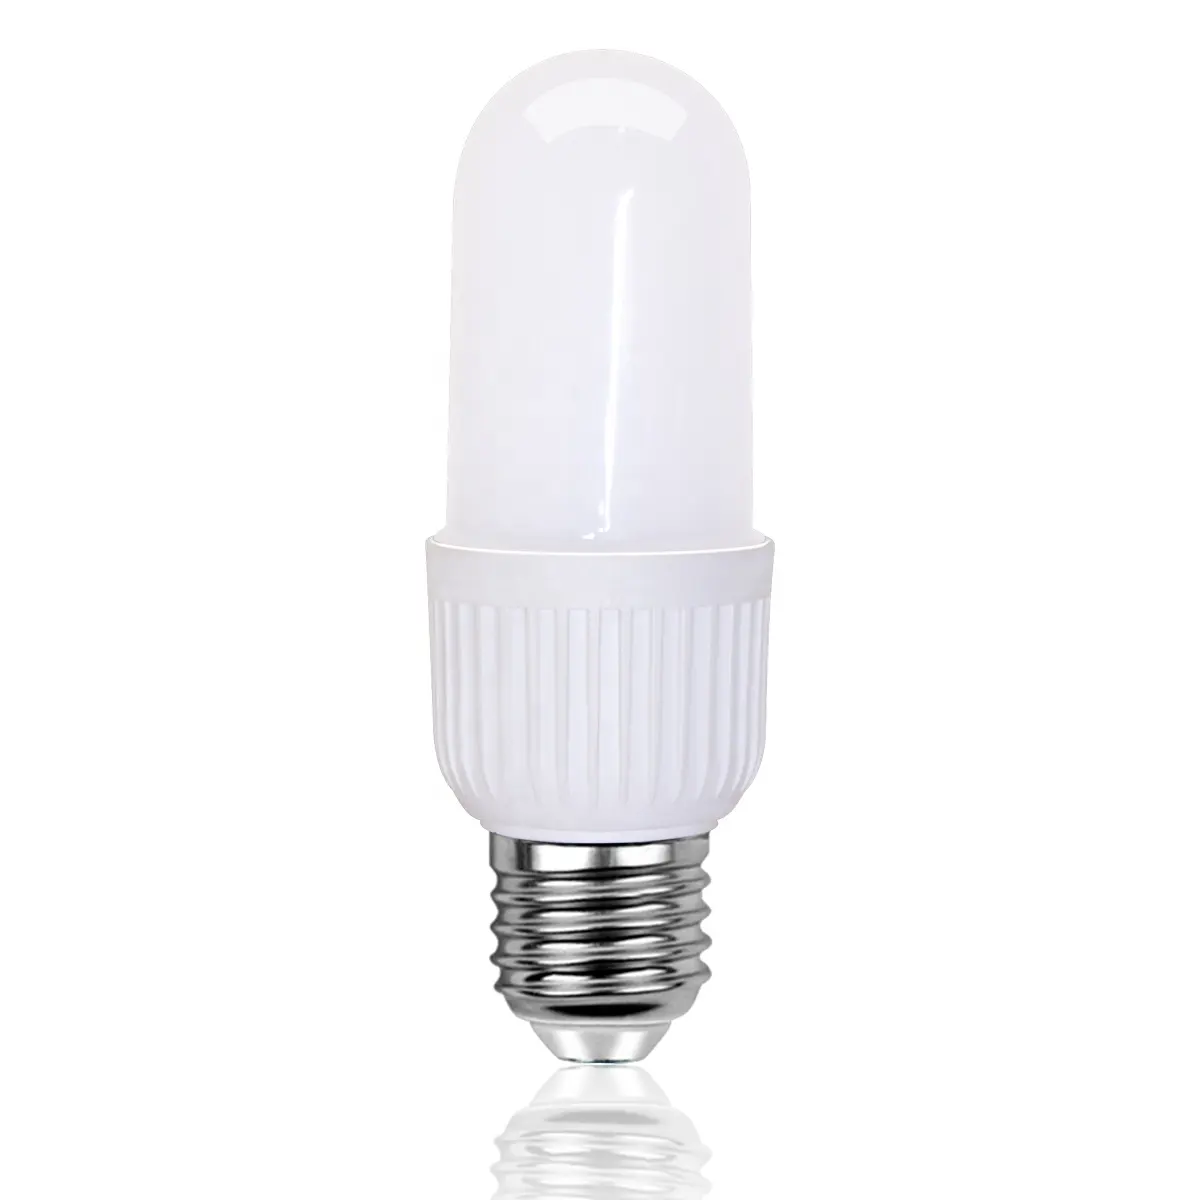 QIHONG New Aluminum Lampada Led Light Bulb 6Watt 12Watt T40 T45 T Type E27/E26 Ac110V/220V Efficiency Energy Saving Lampara LED